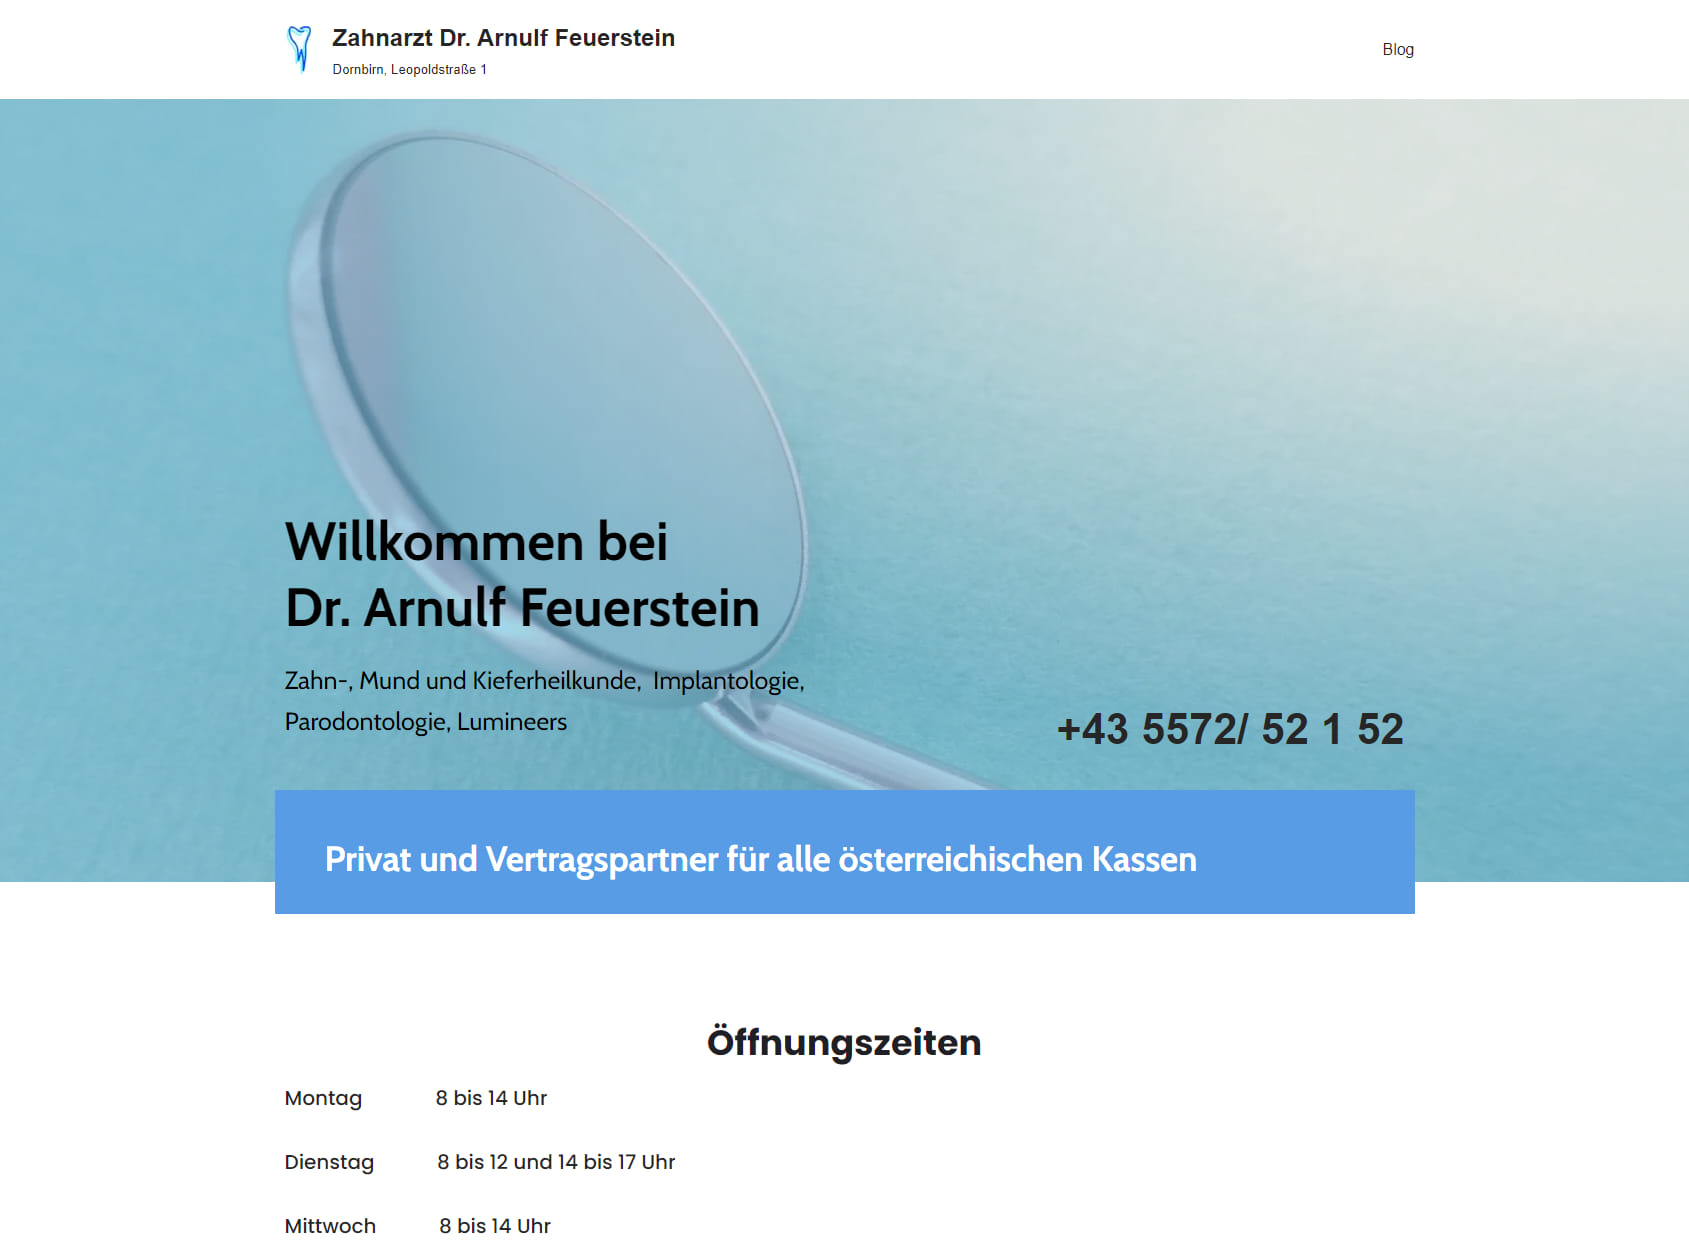 Dr. Arnulf Feuerstein